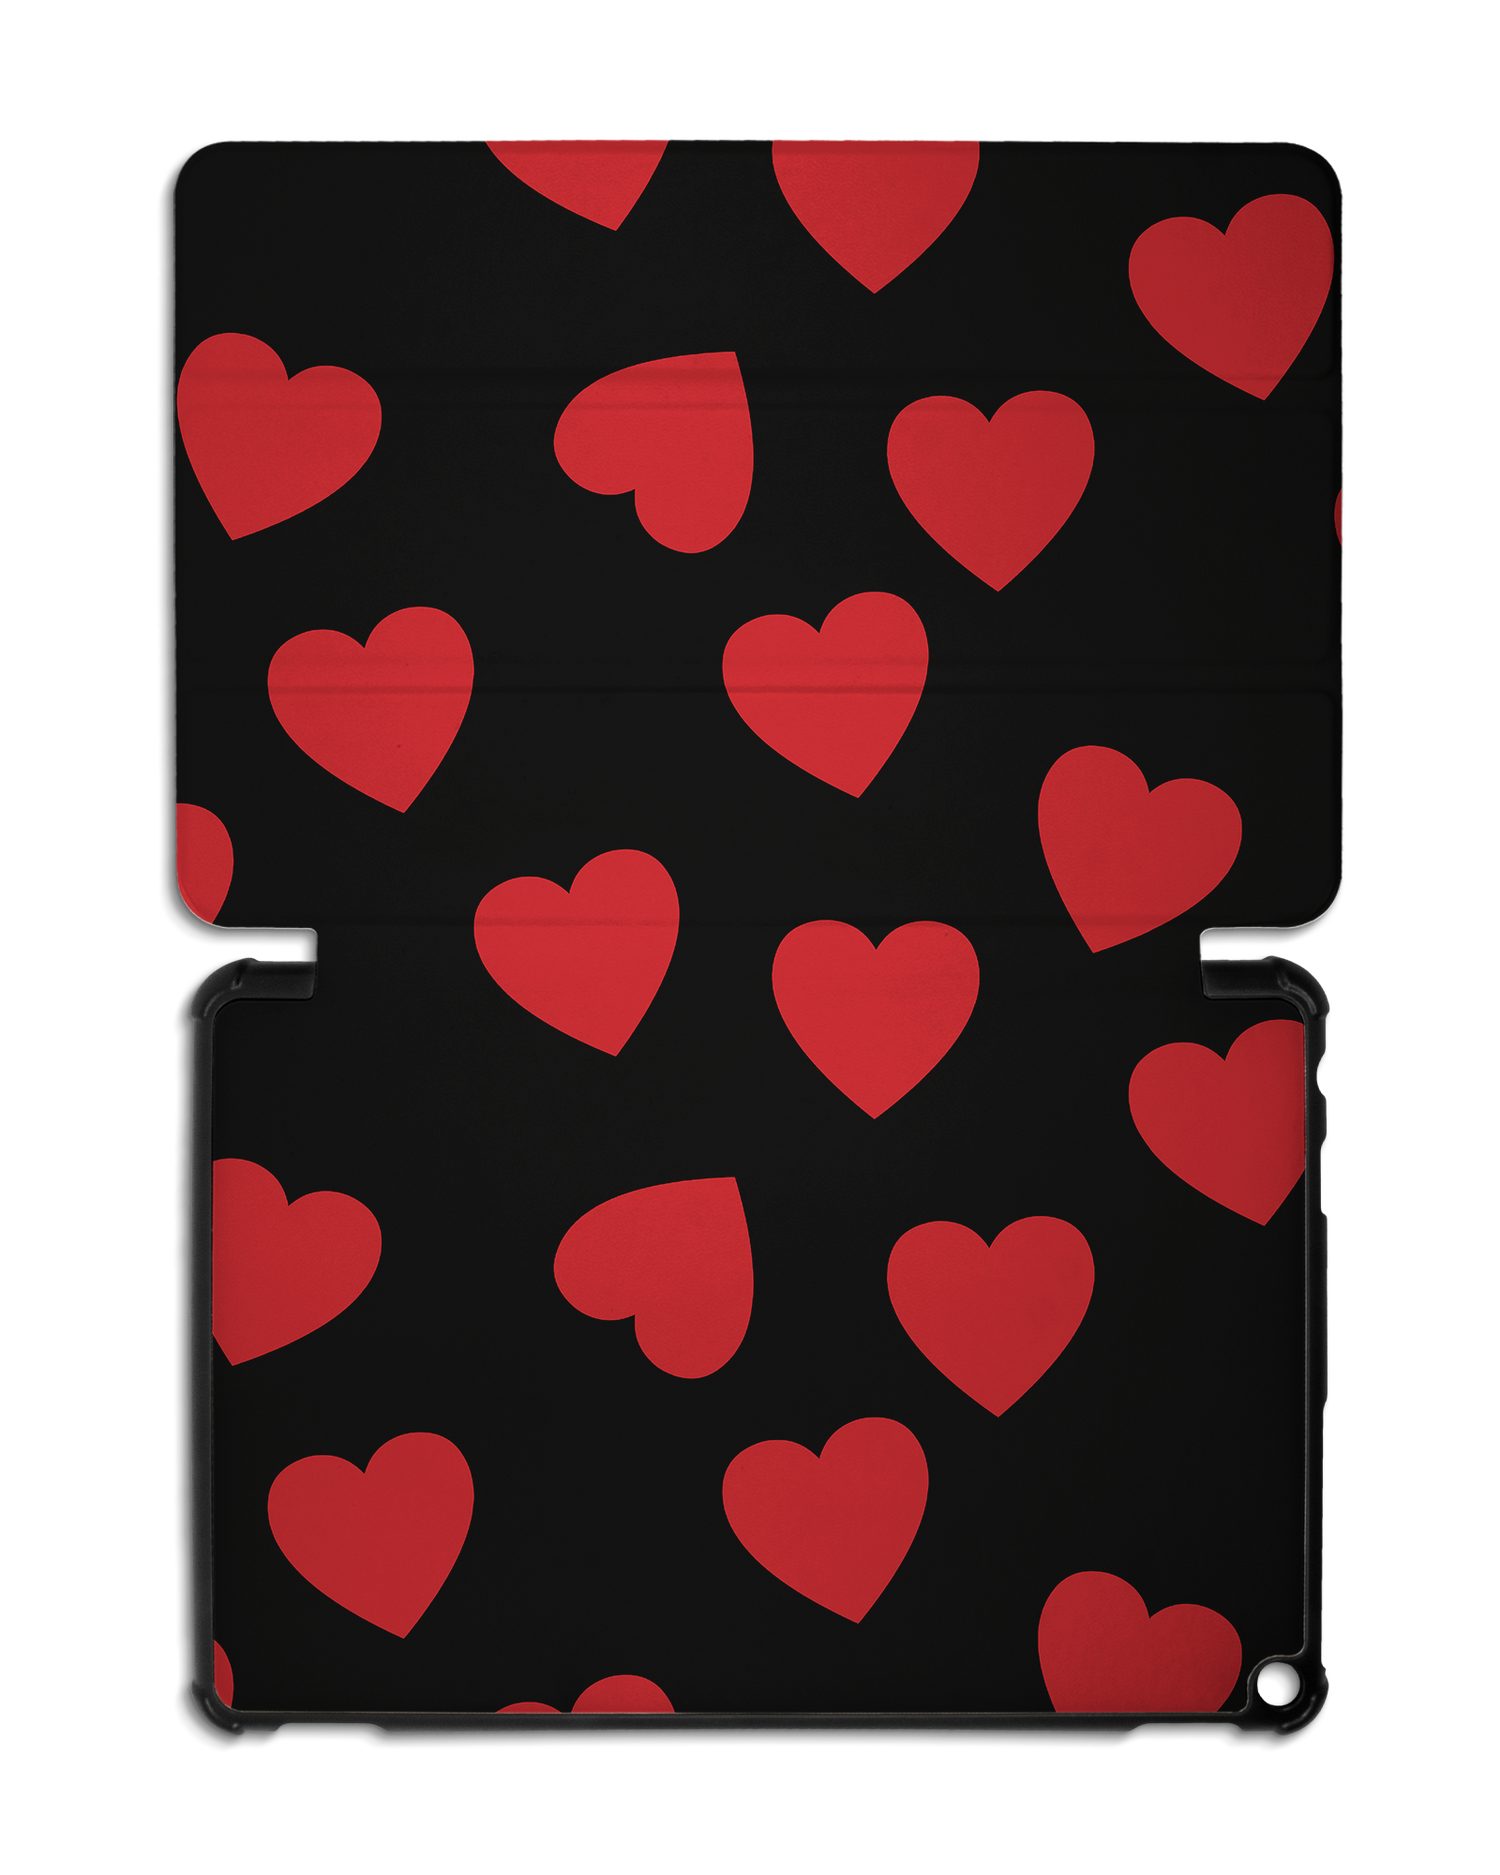 Repeating Hearts Tablet Smart Case für Amazon Fire HD 10 (2021): Aufgeklappt